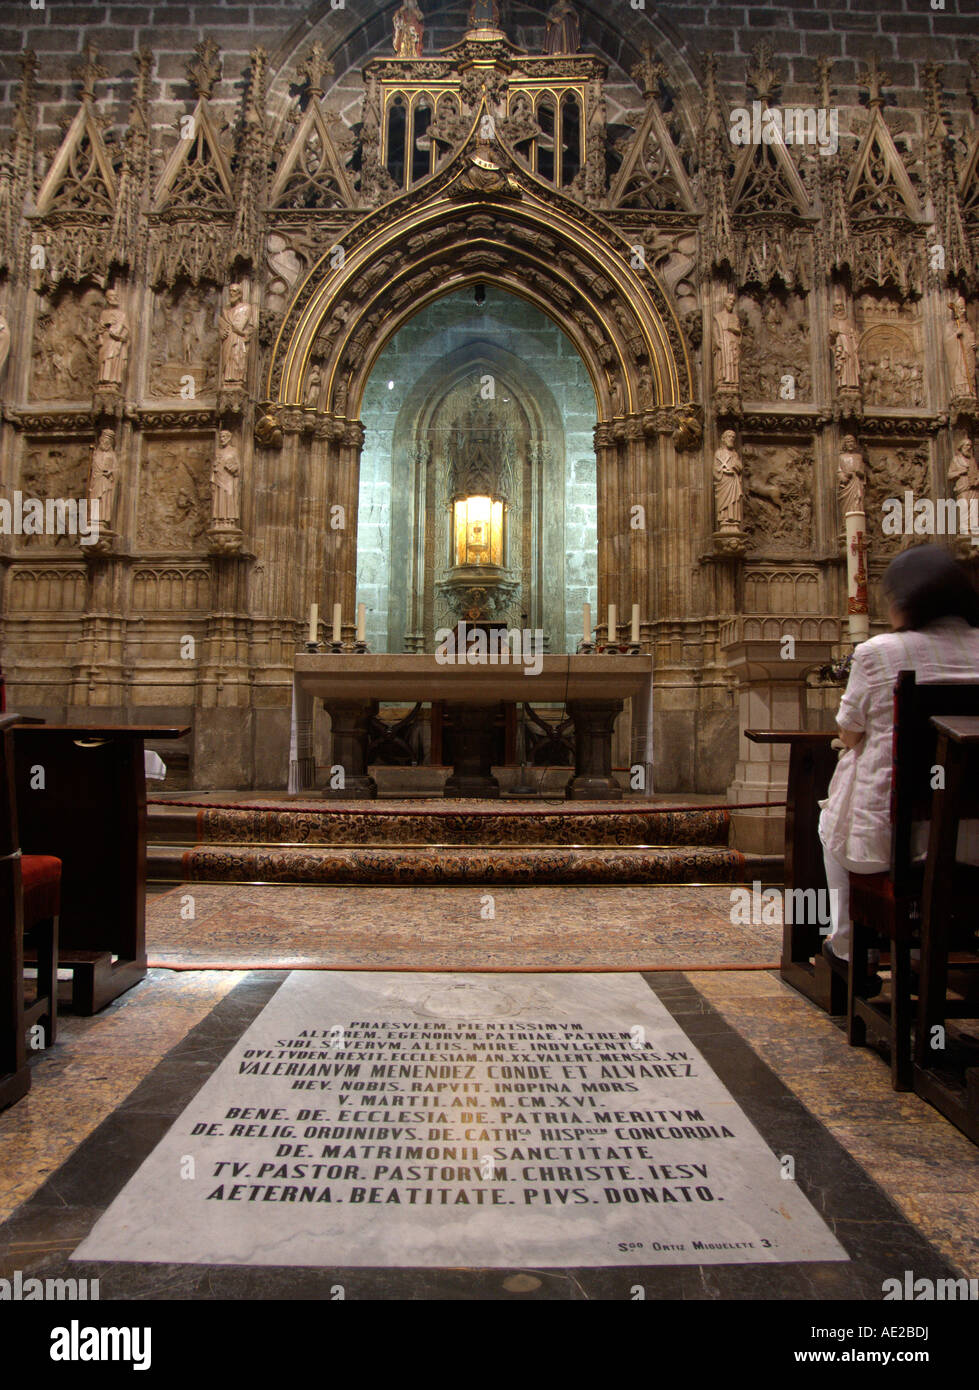 Le Saint Calice Chapelle. Sainte Marie de Valence Basilique-cathédrale métropolitaine. Valence. Espagne Banque D'Images